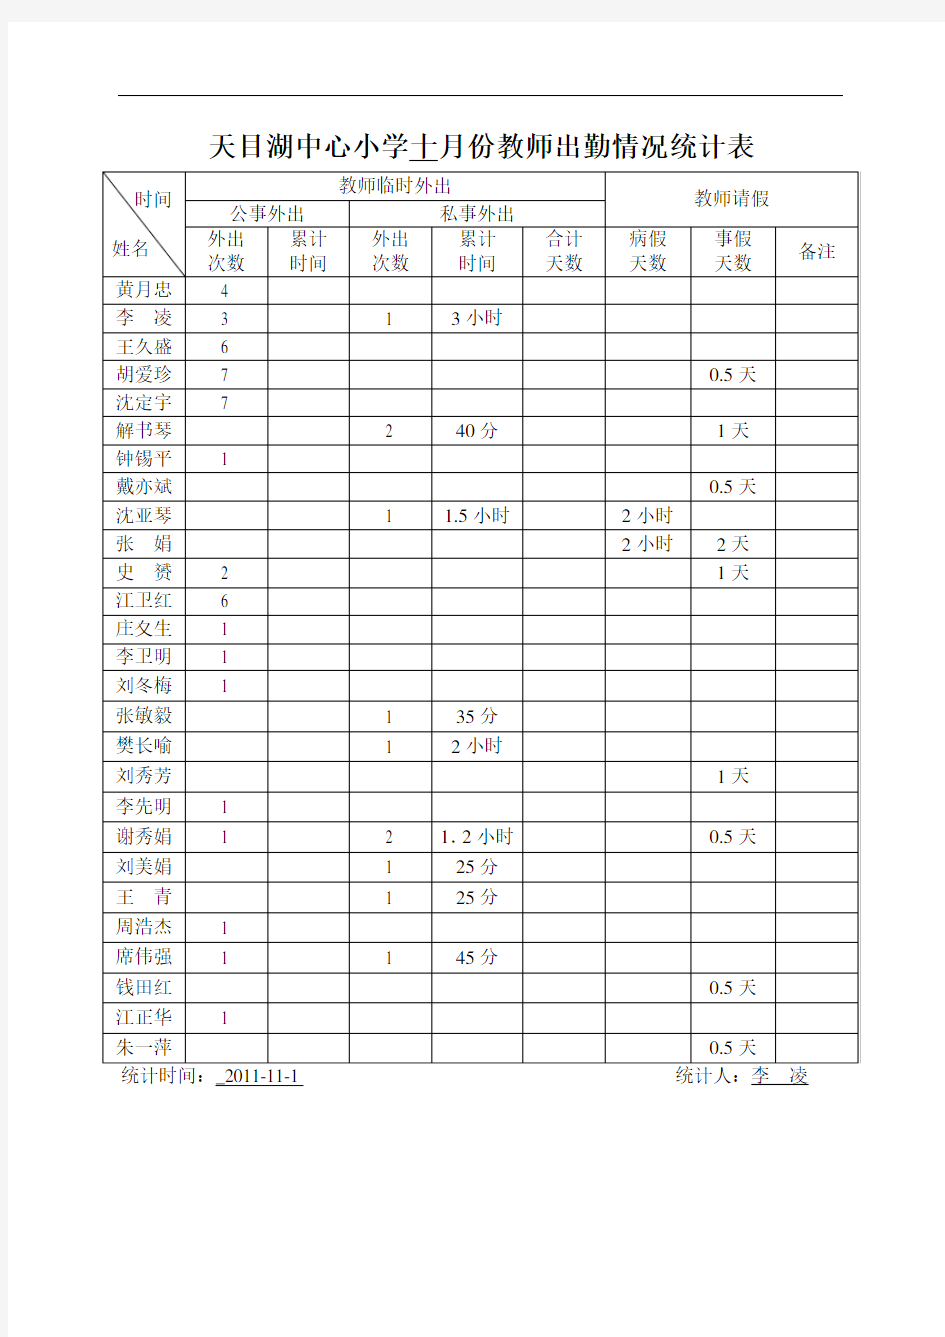 天目湖中心小学十月份教师出勤情况统计表